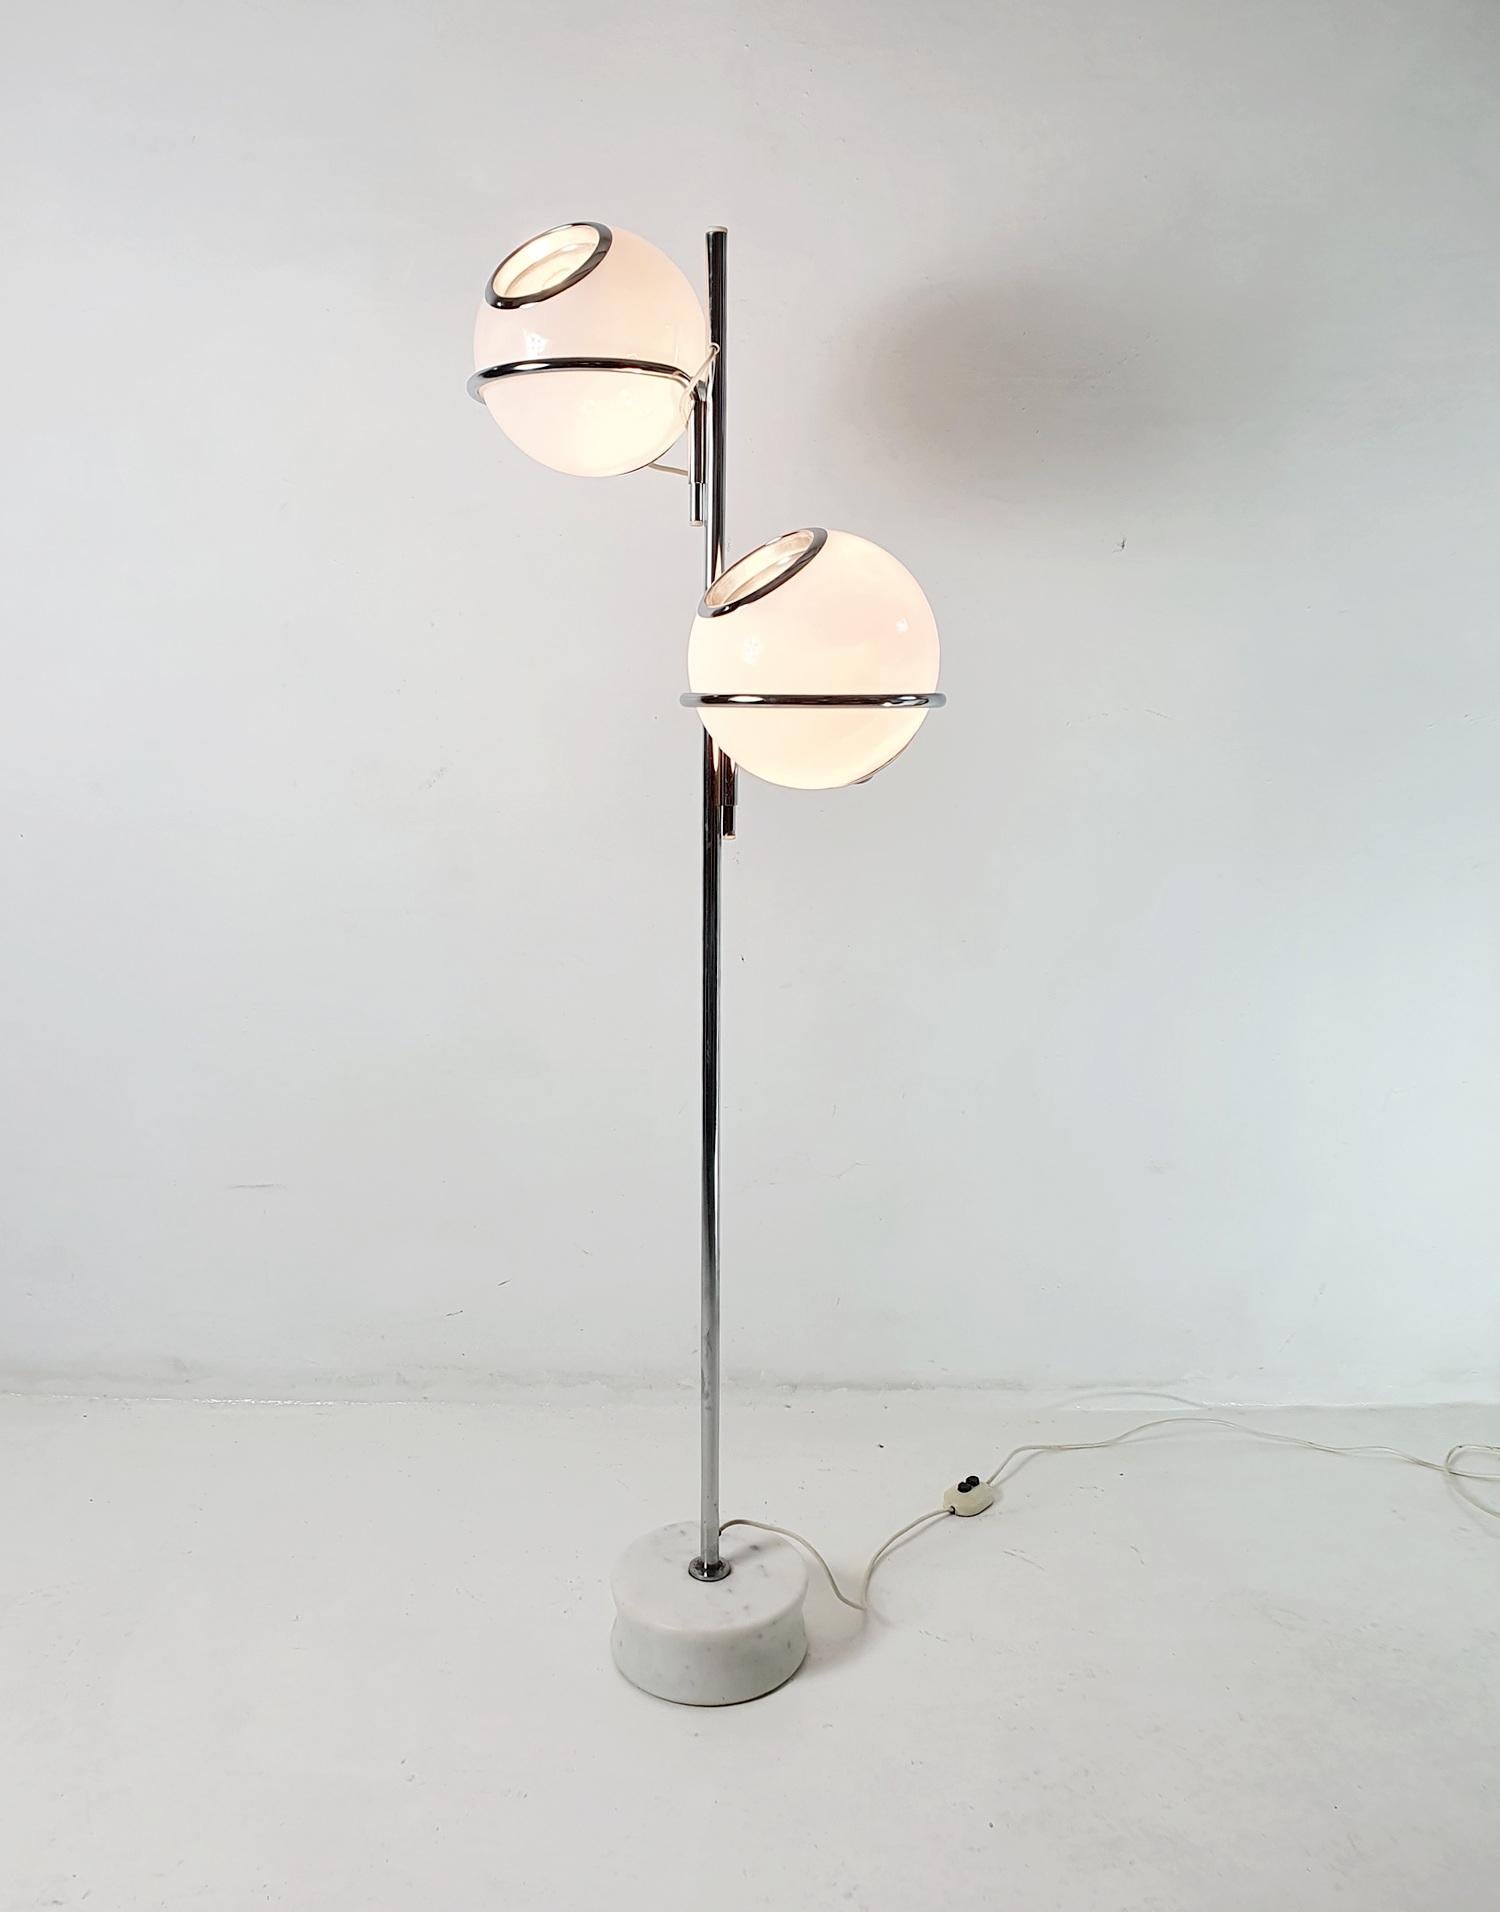 Il s'agit d'un lampadaire original modèle 1094 de Gino Sarfatti (1912-1985) qui a été conçu pour Arteluce en 1969.
Elle se compose d'une base en marbre de carrare, d'une structure en acier chromé et d'abat-jours en verre de lait réglables